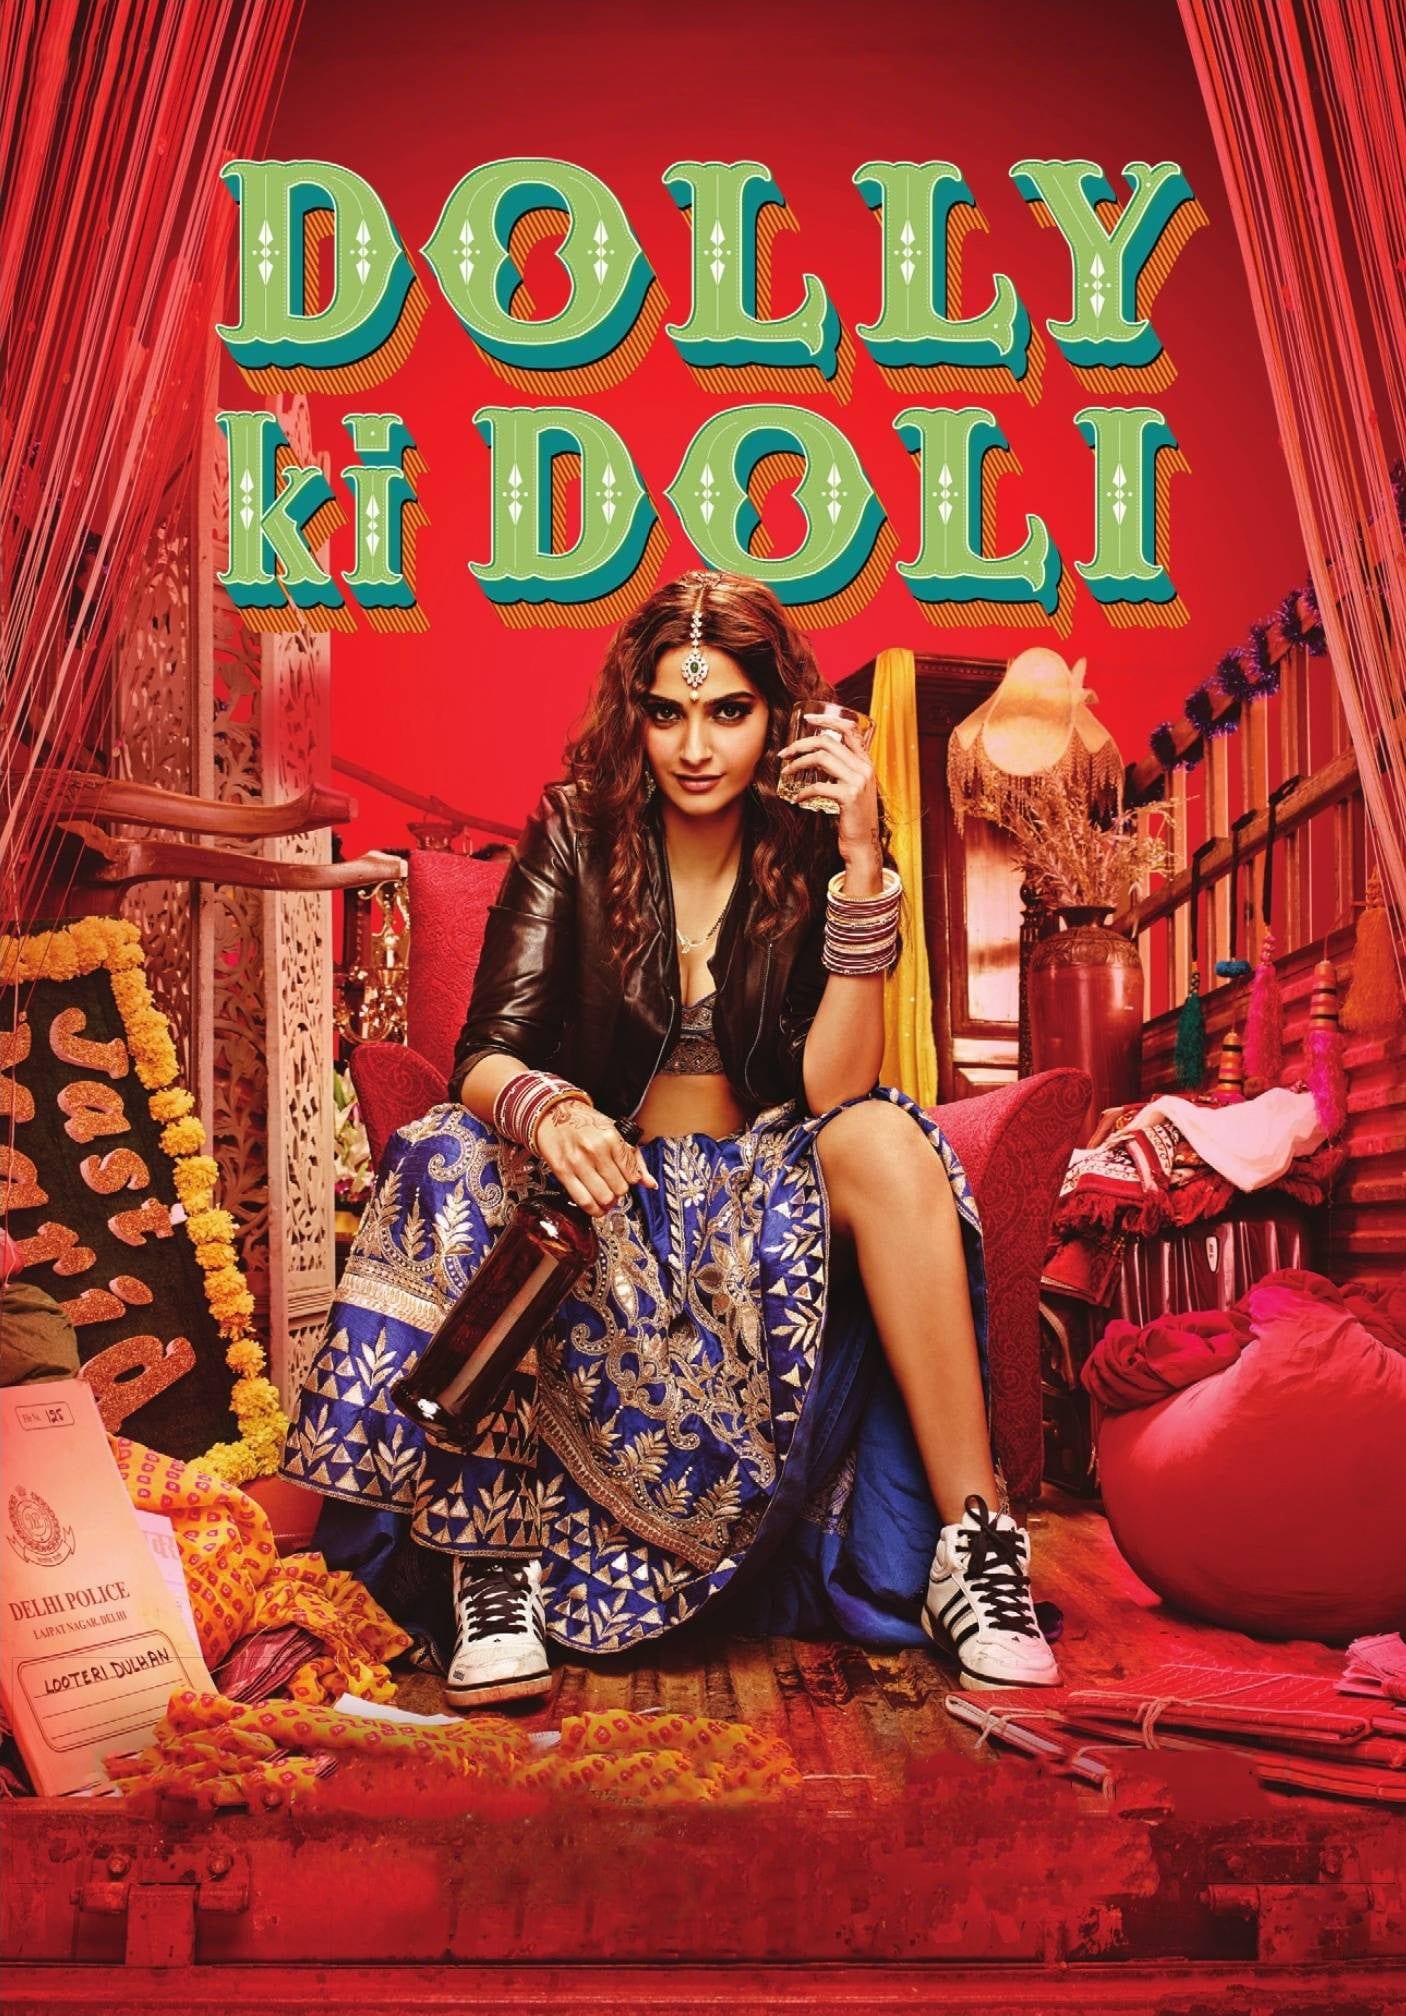 Poster for the movie "Dolly Ki Doli"